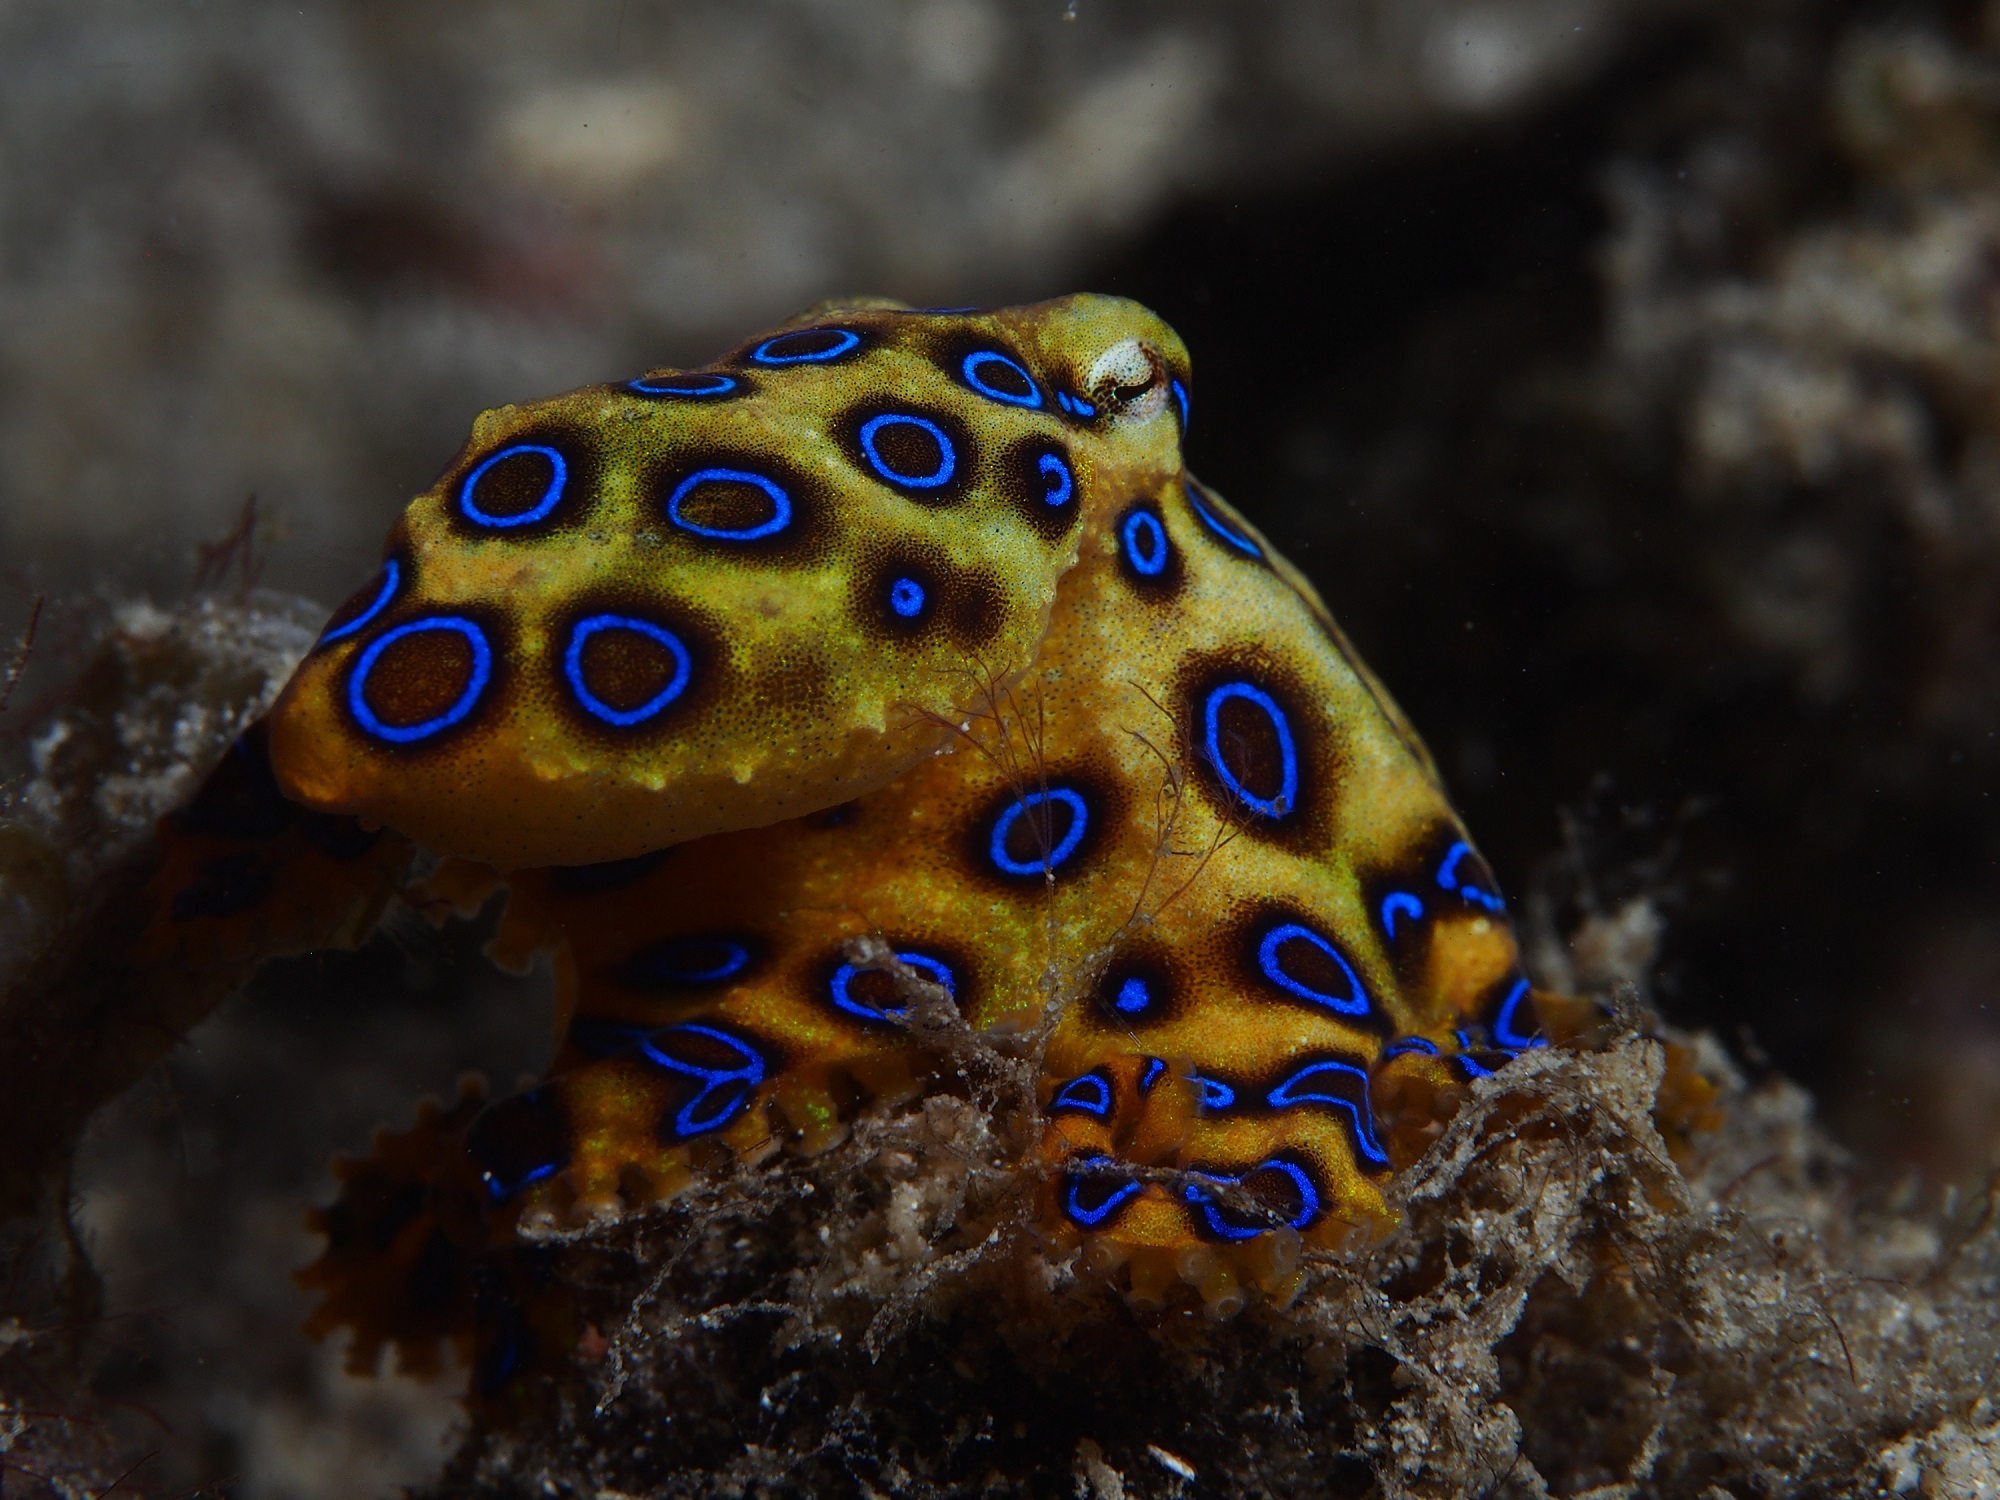 Сообщение удивительные обитатели океана. Синекольчатый осьминог. Сине кольчетый осм5ног. Ядовитый Синекольчатый осьминог. Австралийский Синекольчатый осьминог.